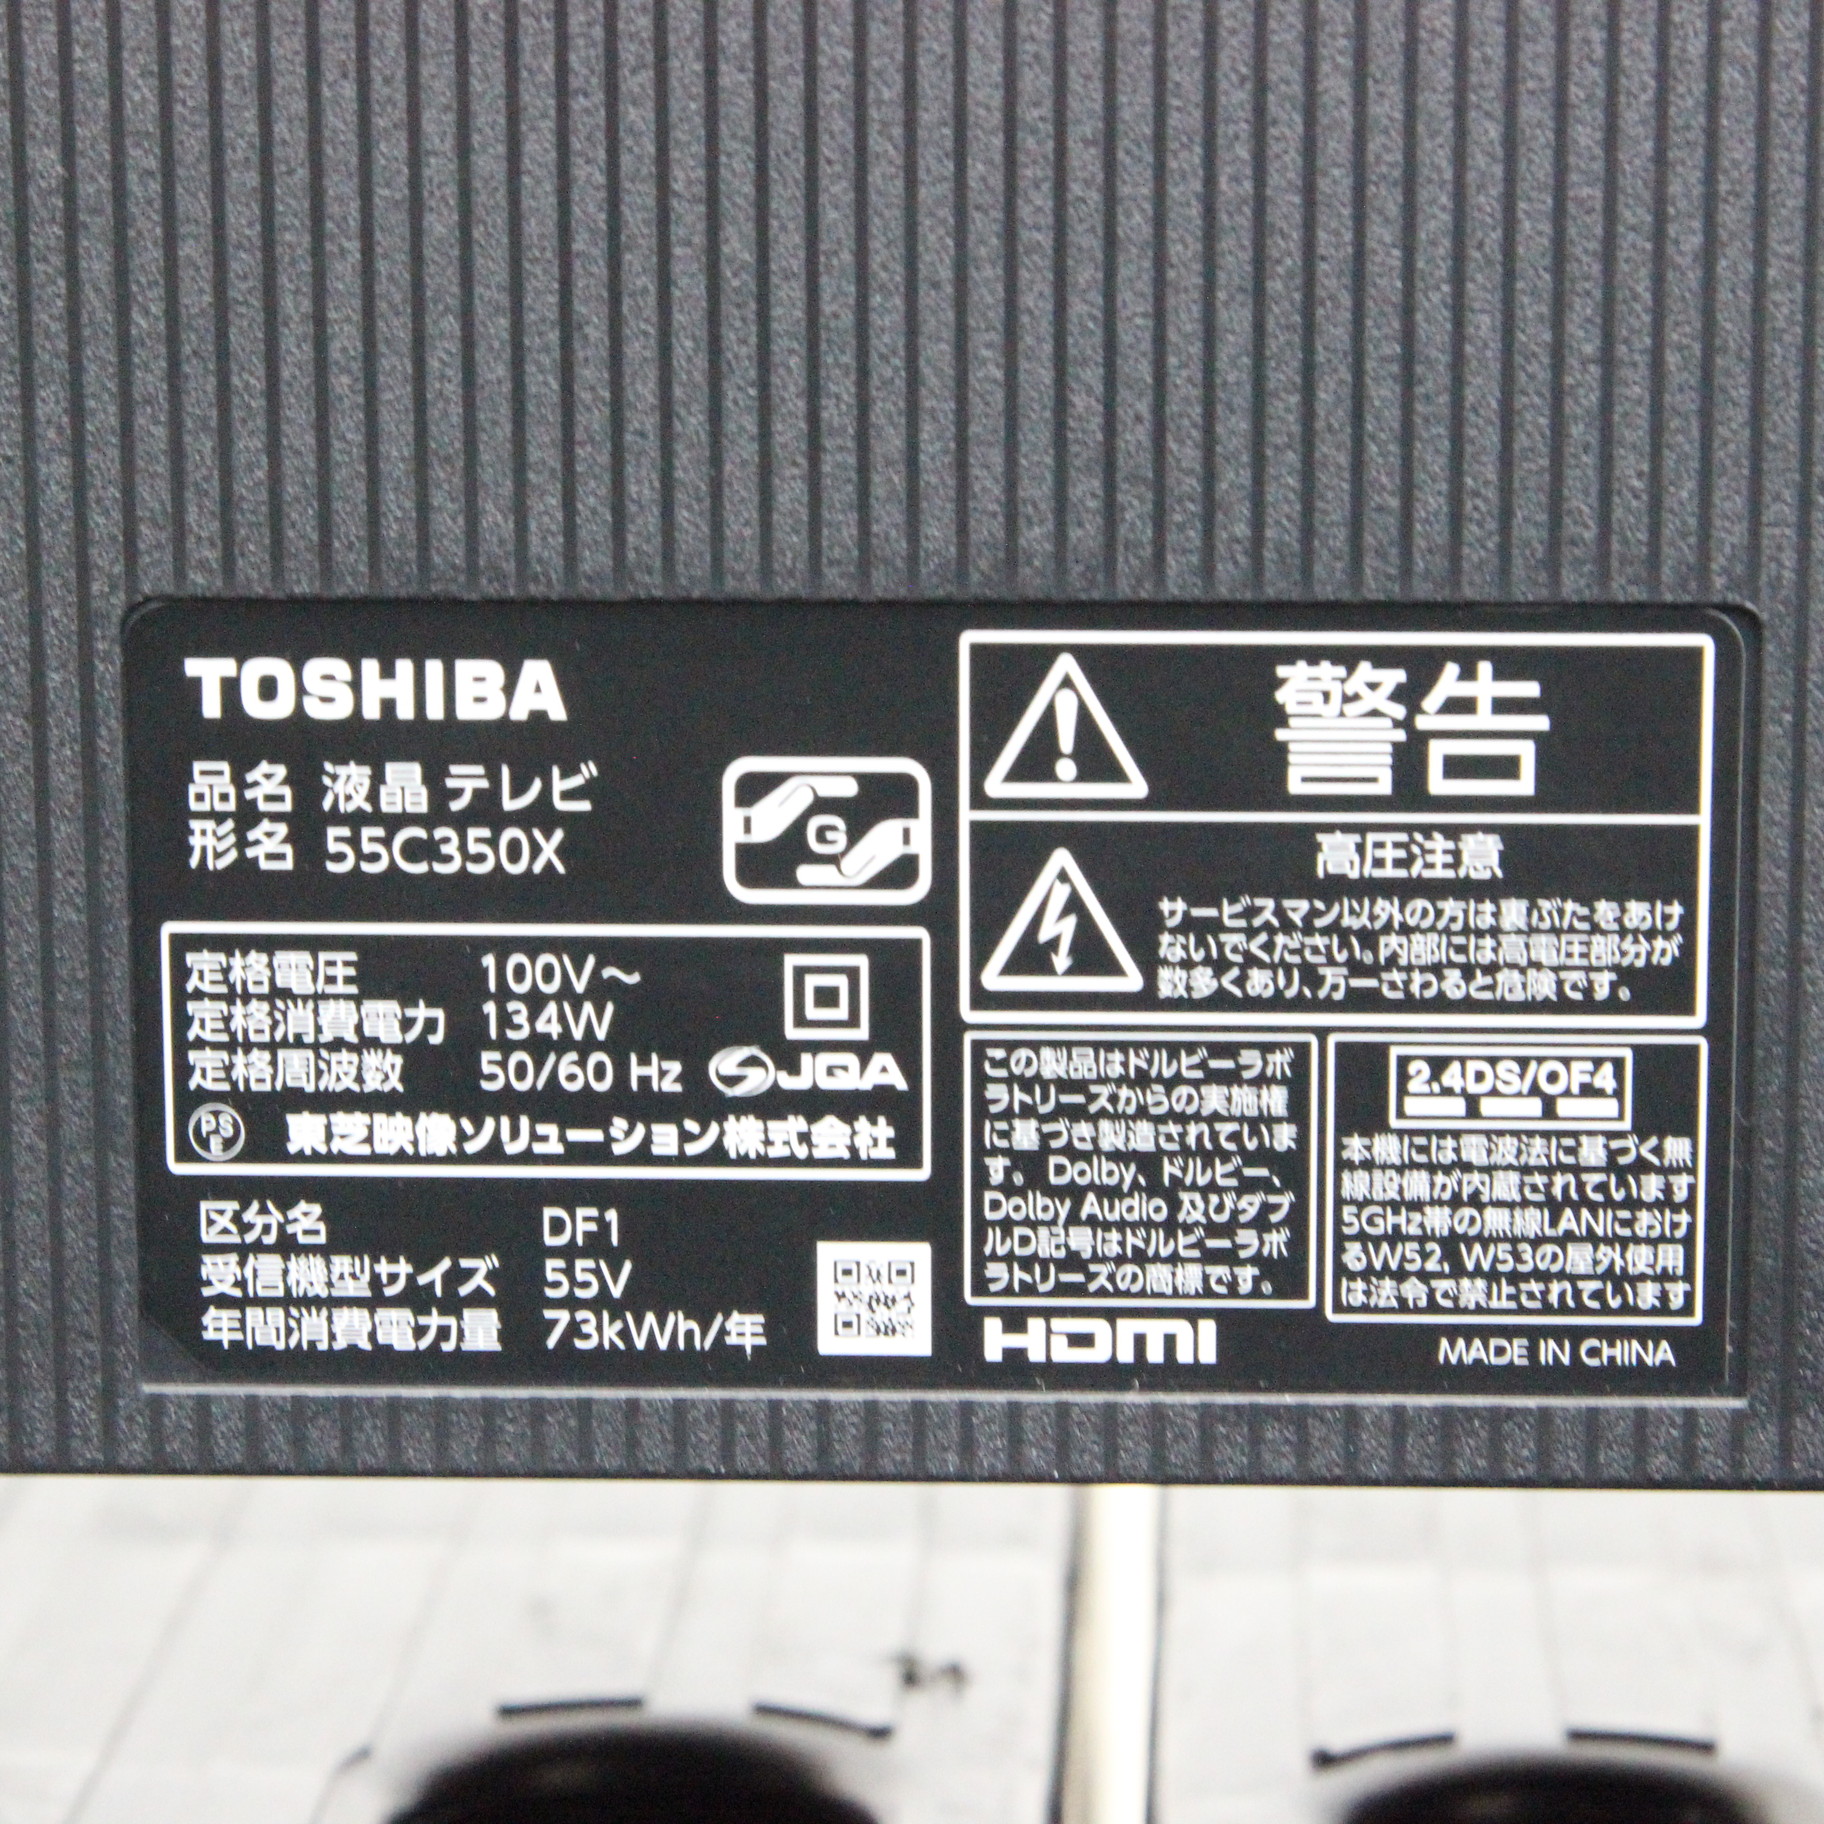 ❤オンラインストア販売済み❤ TOSHIBA 55C350X BLACK radimmune.com